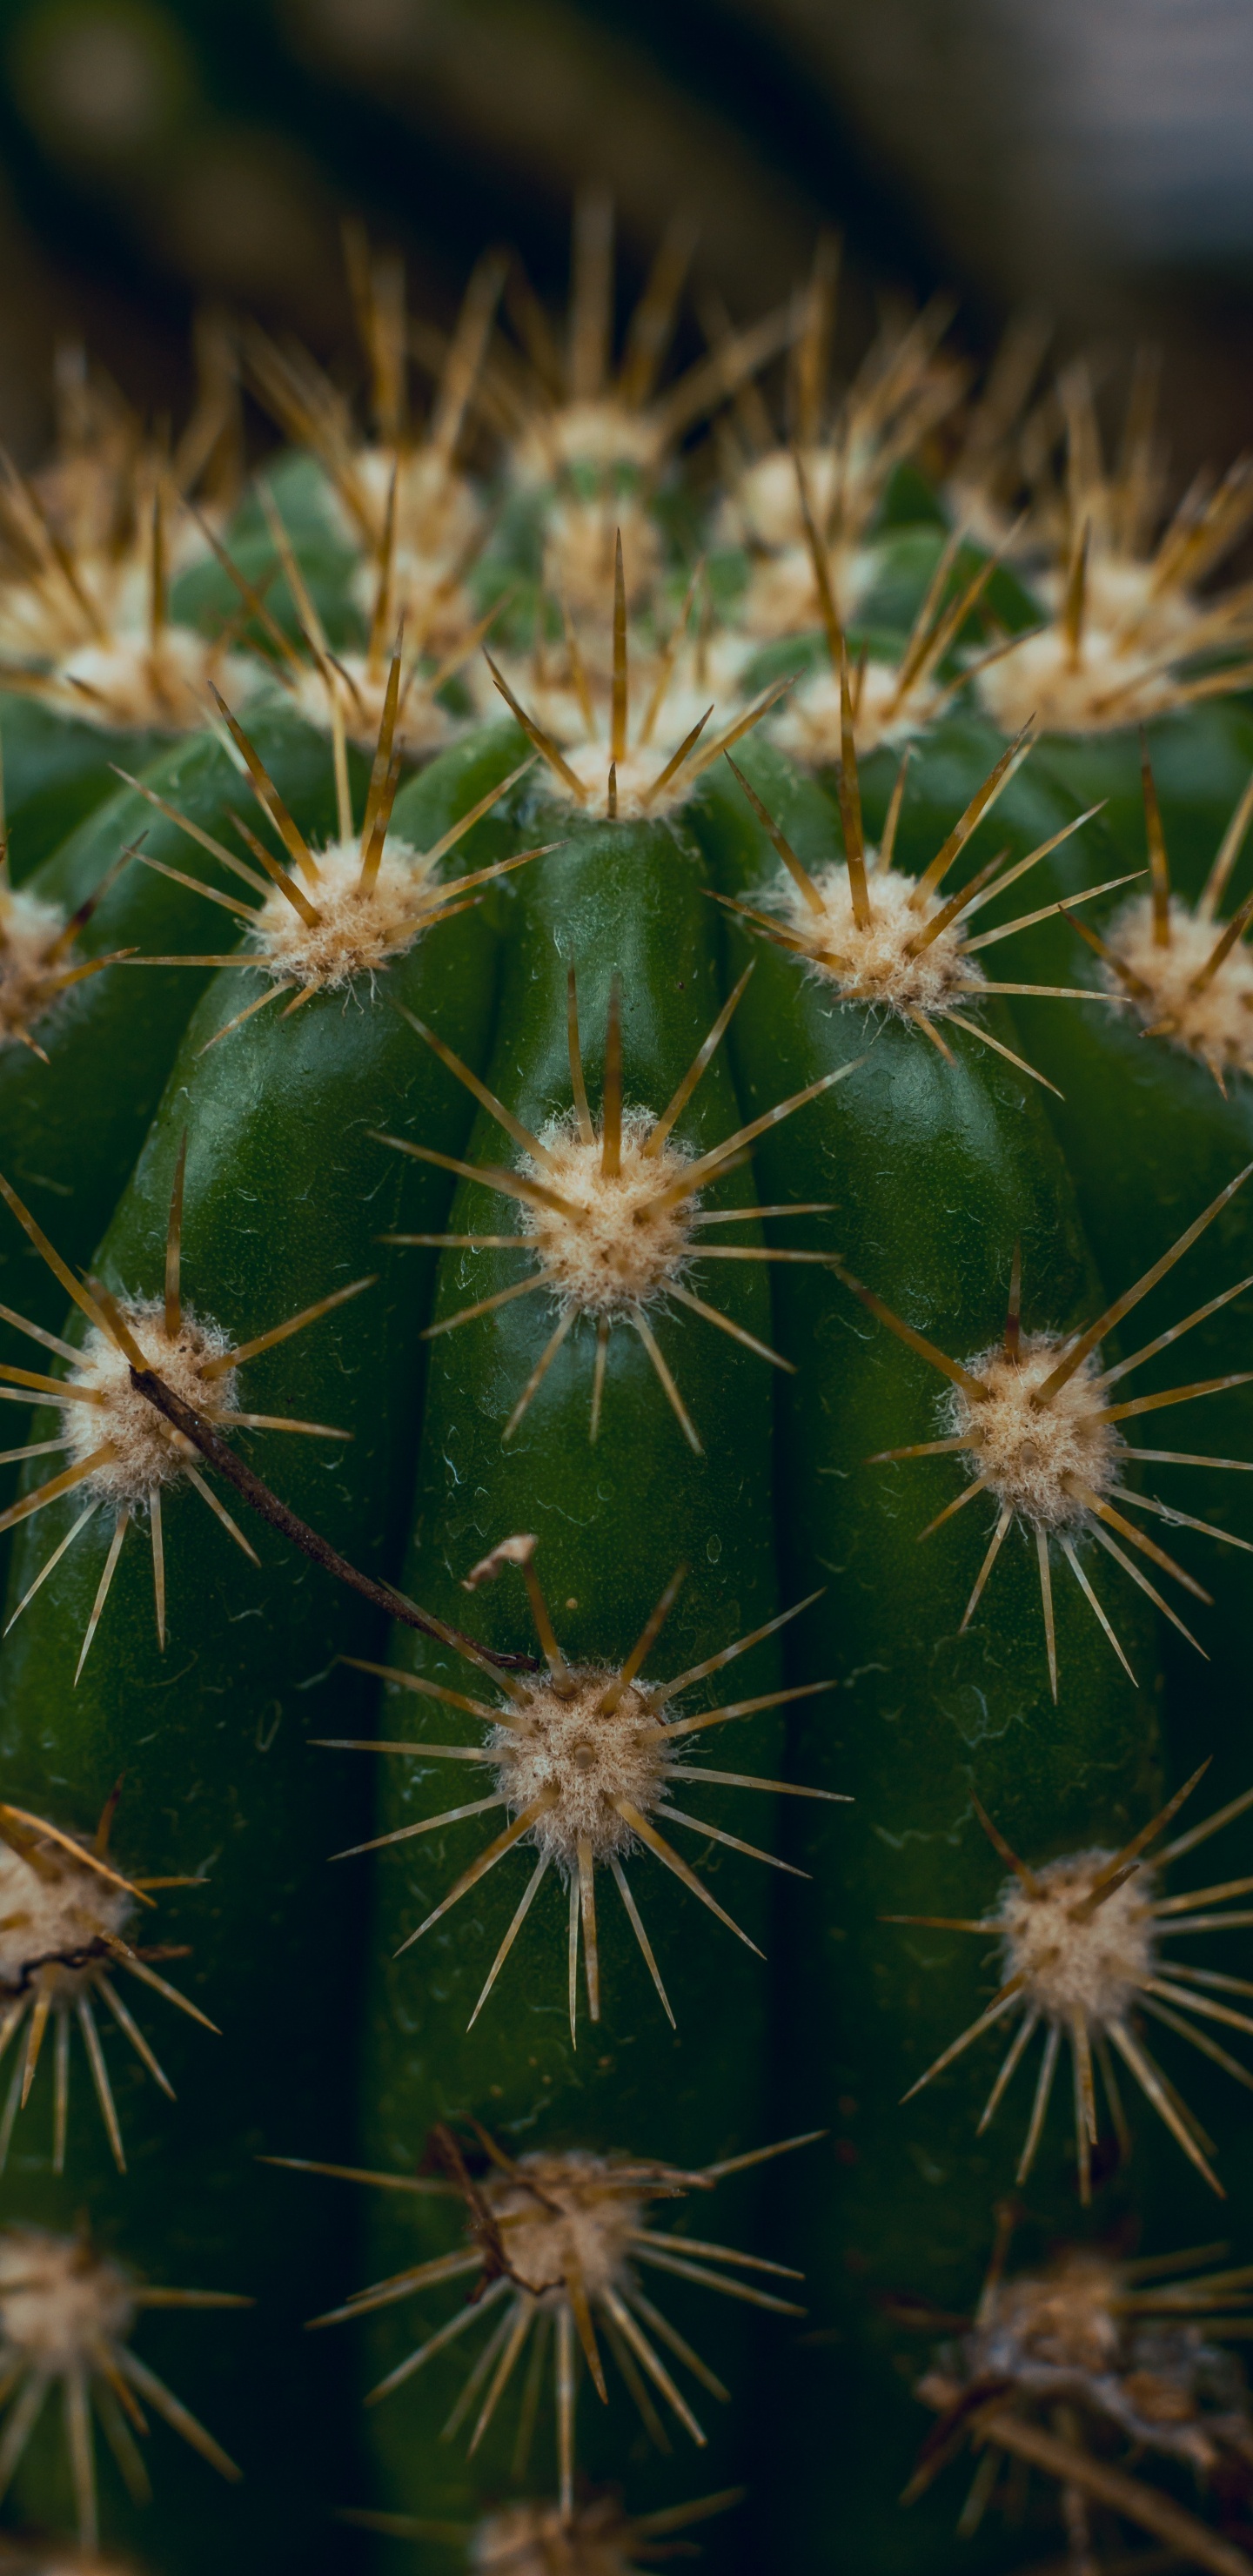 Grüner Kaktus in Nahaufnahme. Wallpaper in 1440x2960 Resolution